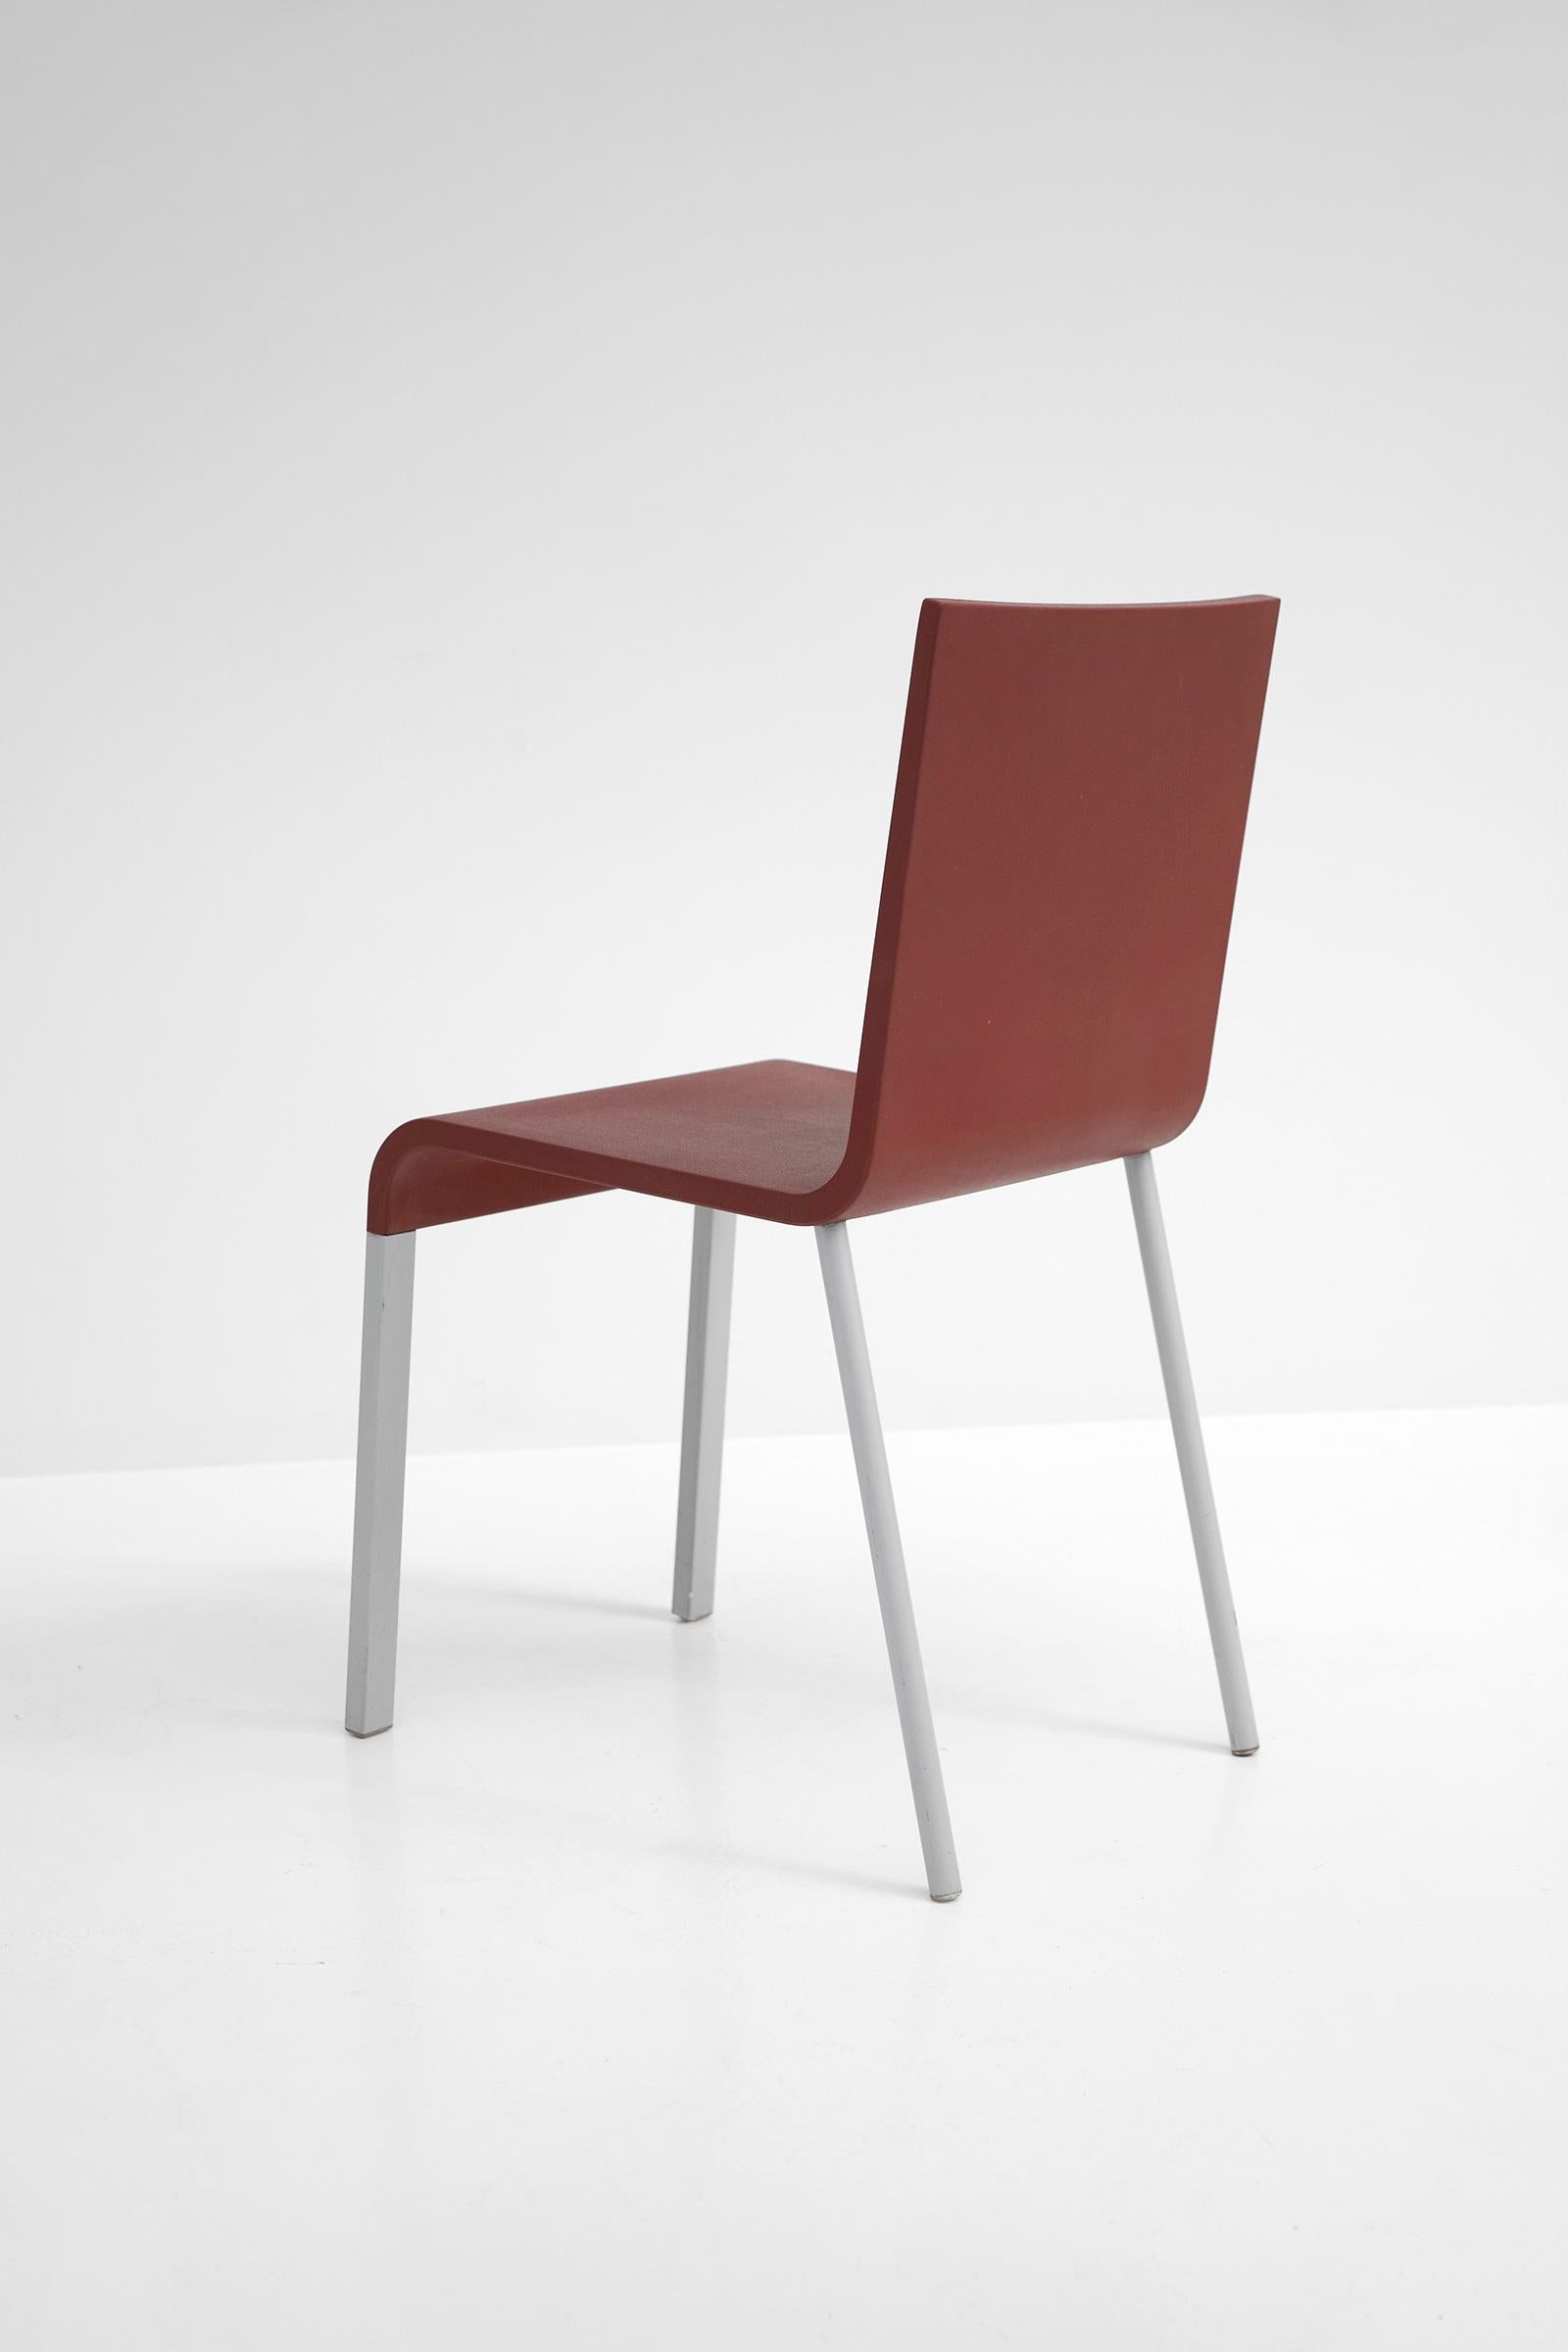 Belgian Pair of Maarten van Severen .03 Vitra Chairs in Wine-Red For Sale